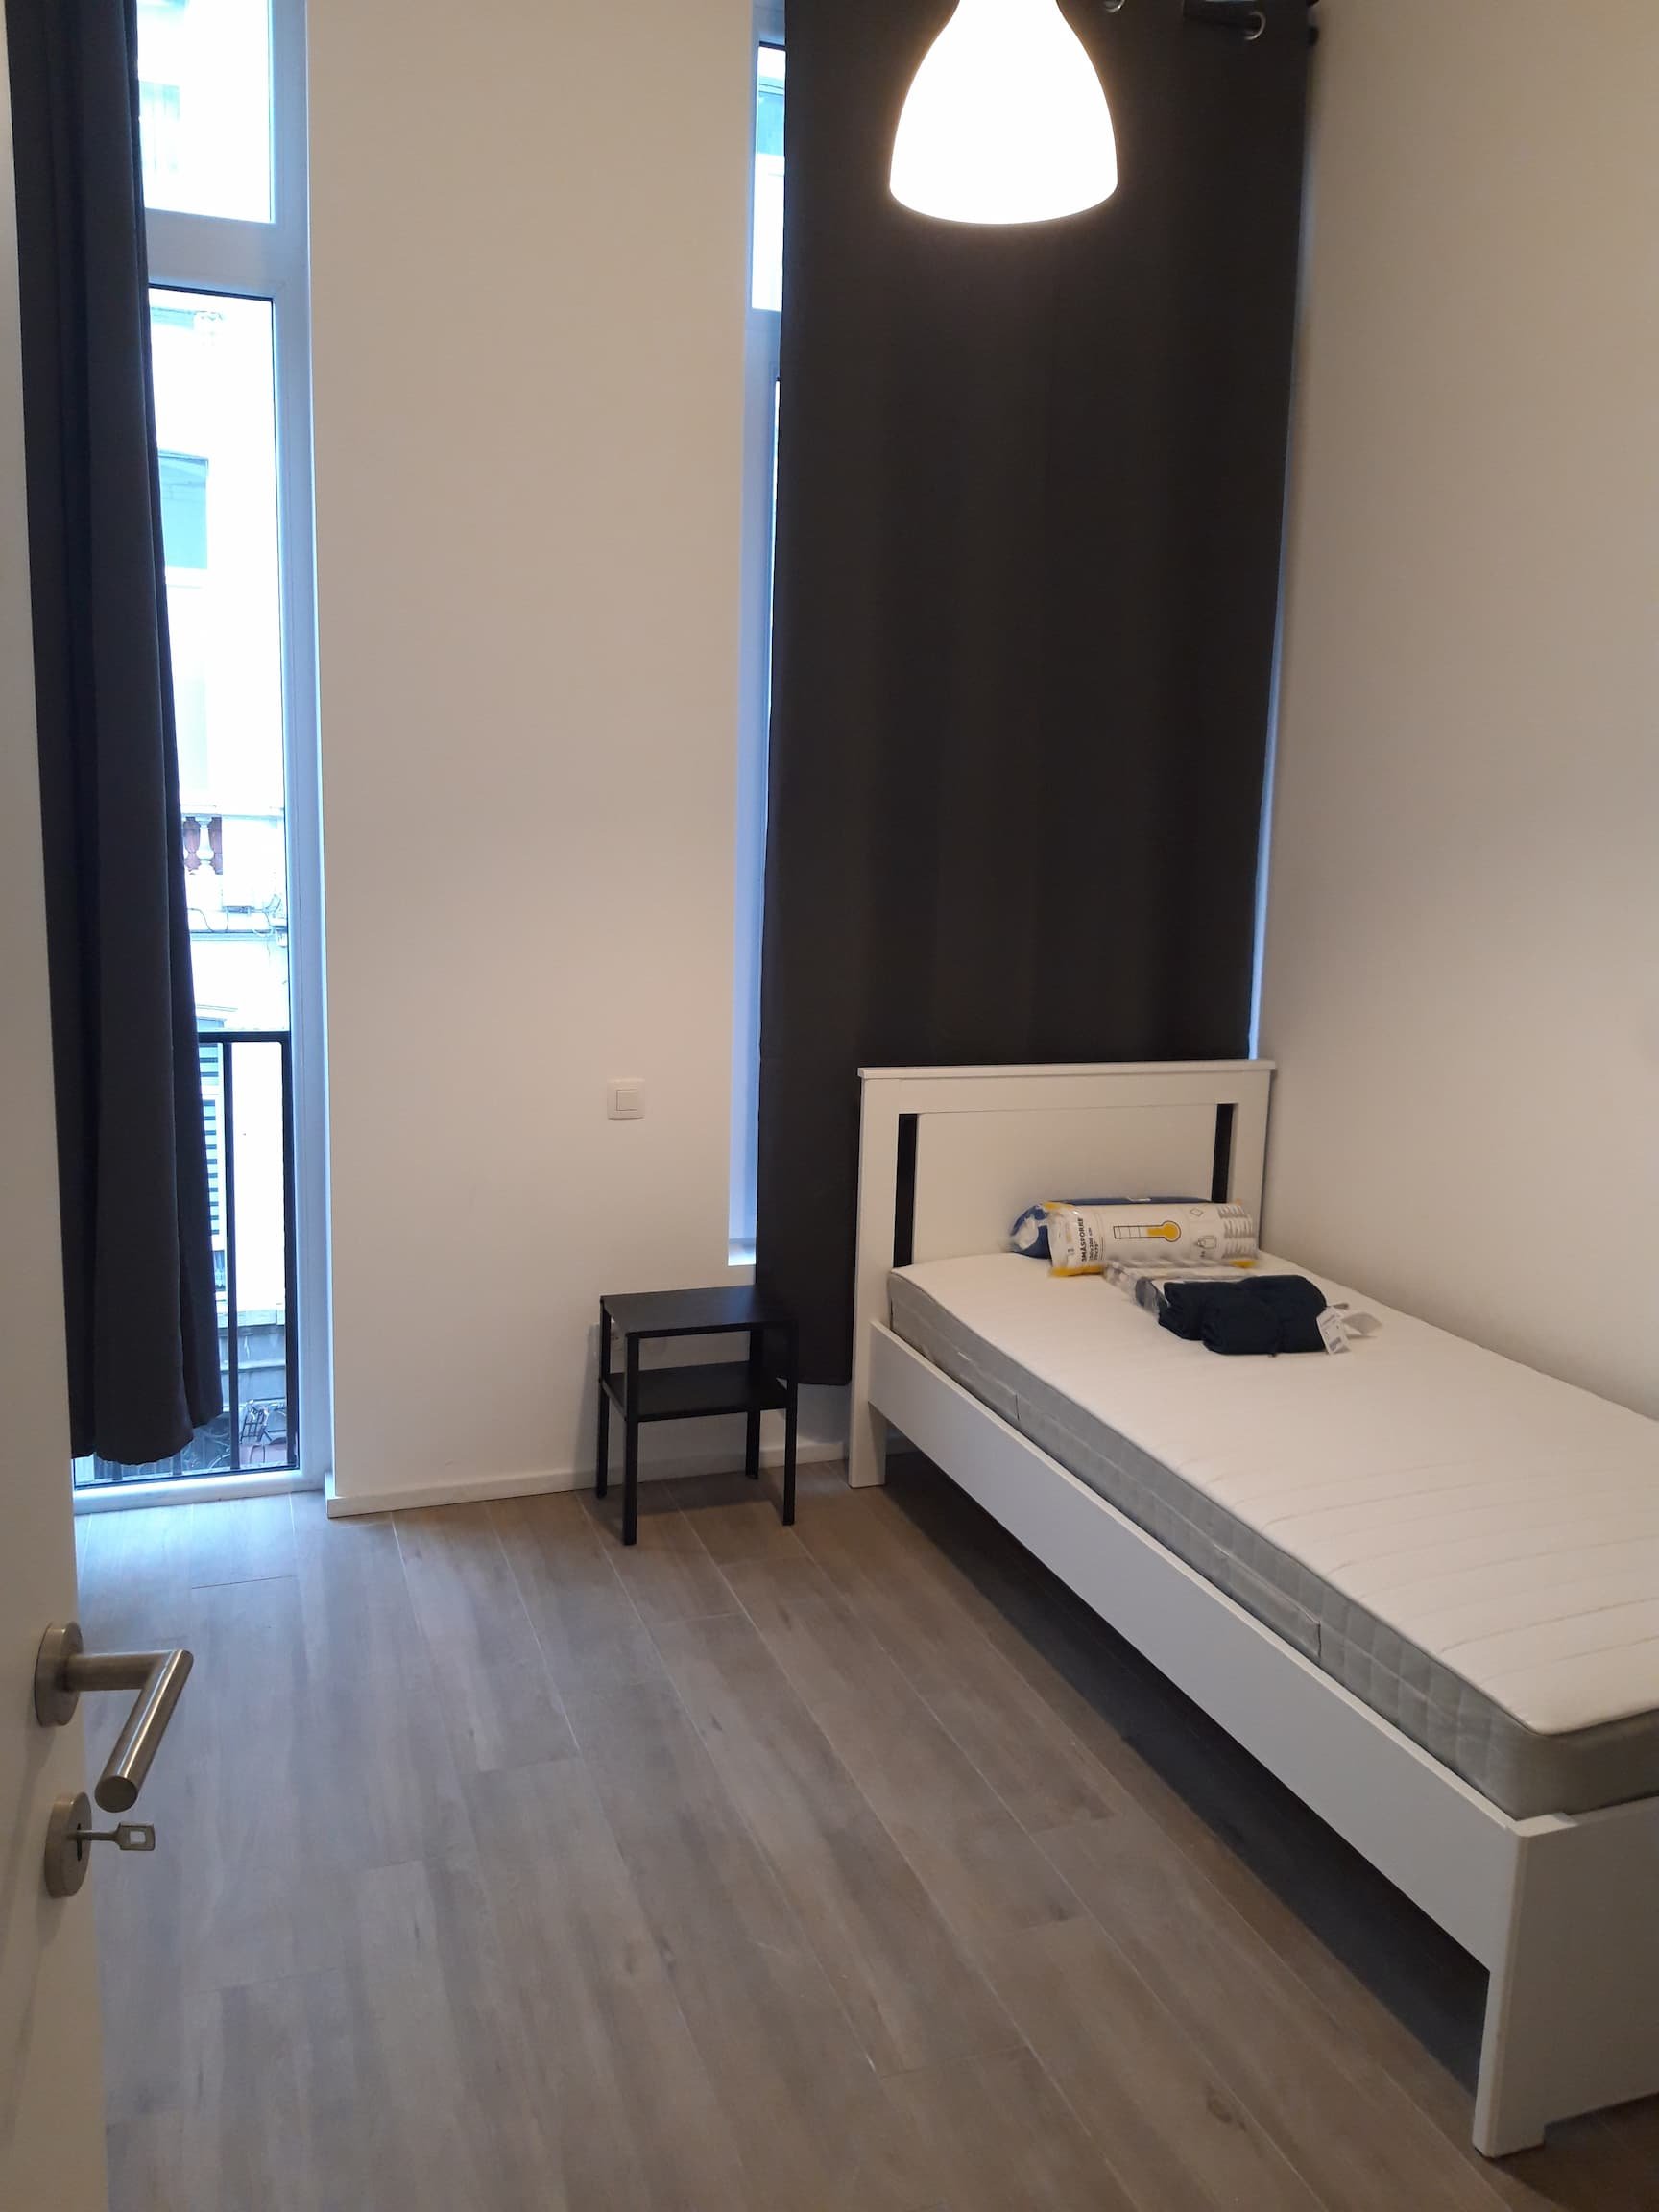 Jacob - Moderno apartamento para expats en Amberes